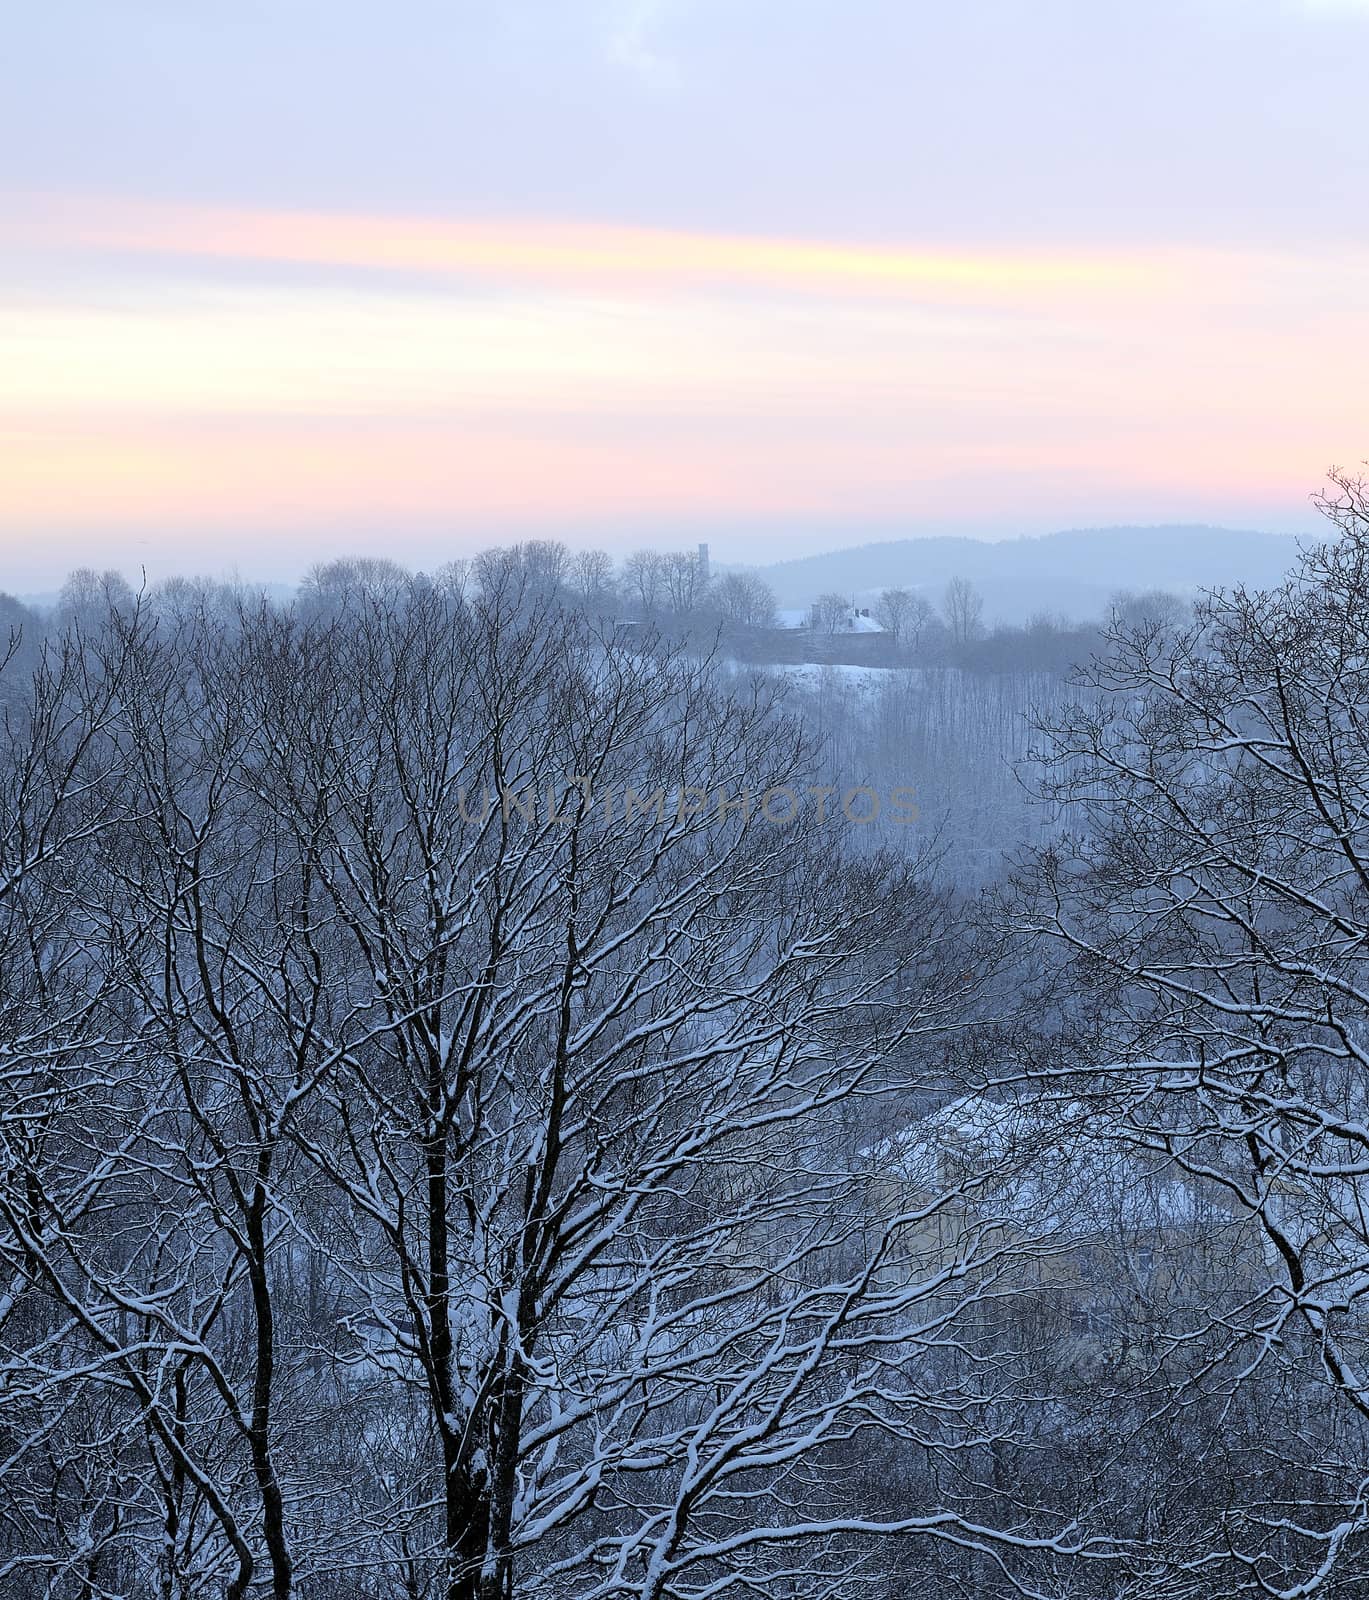 December morning in city. Snow covered trees. Winter sunrise on Vilnius hills